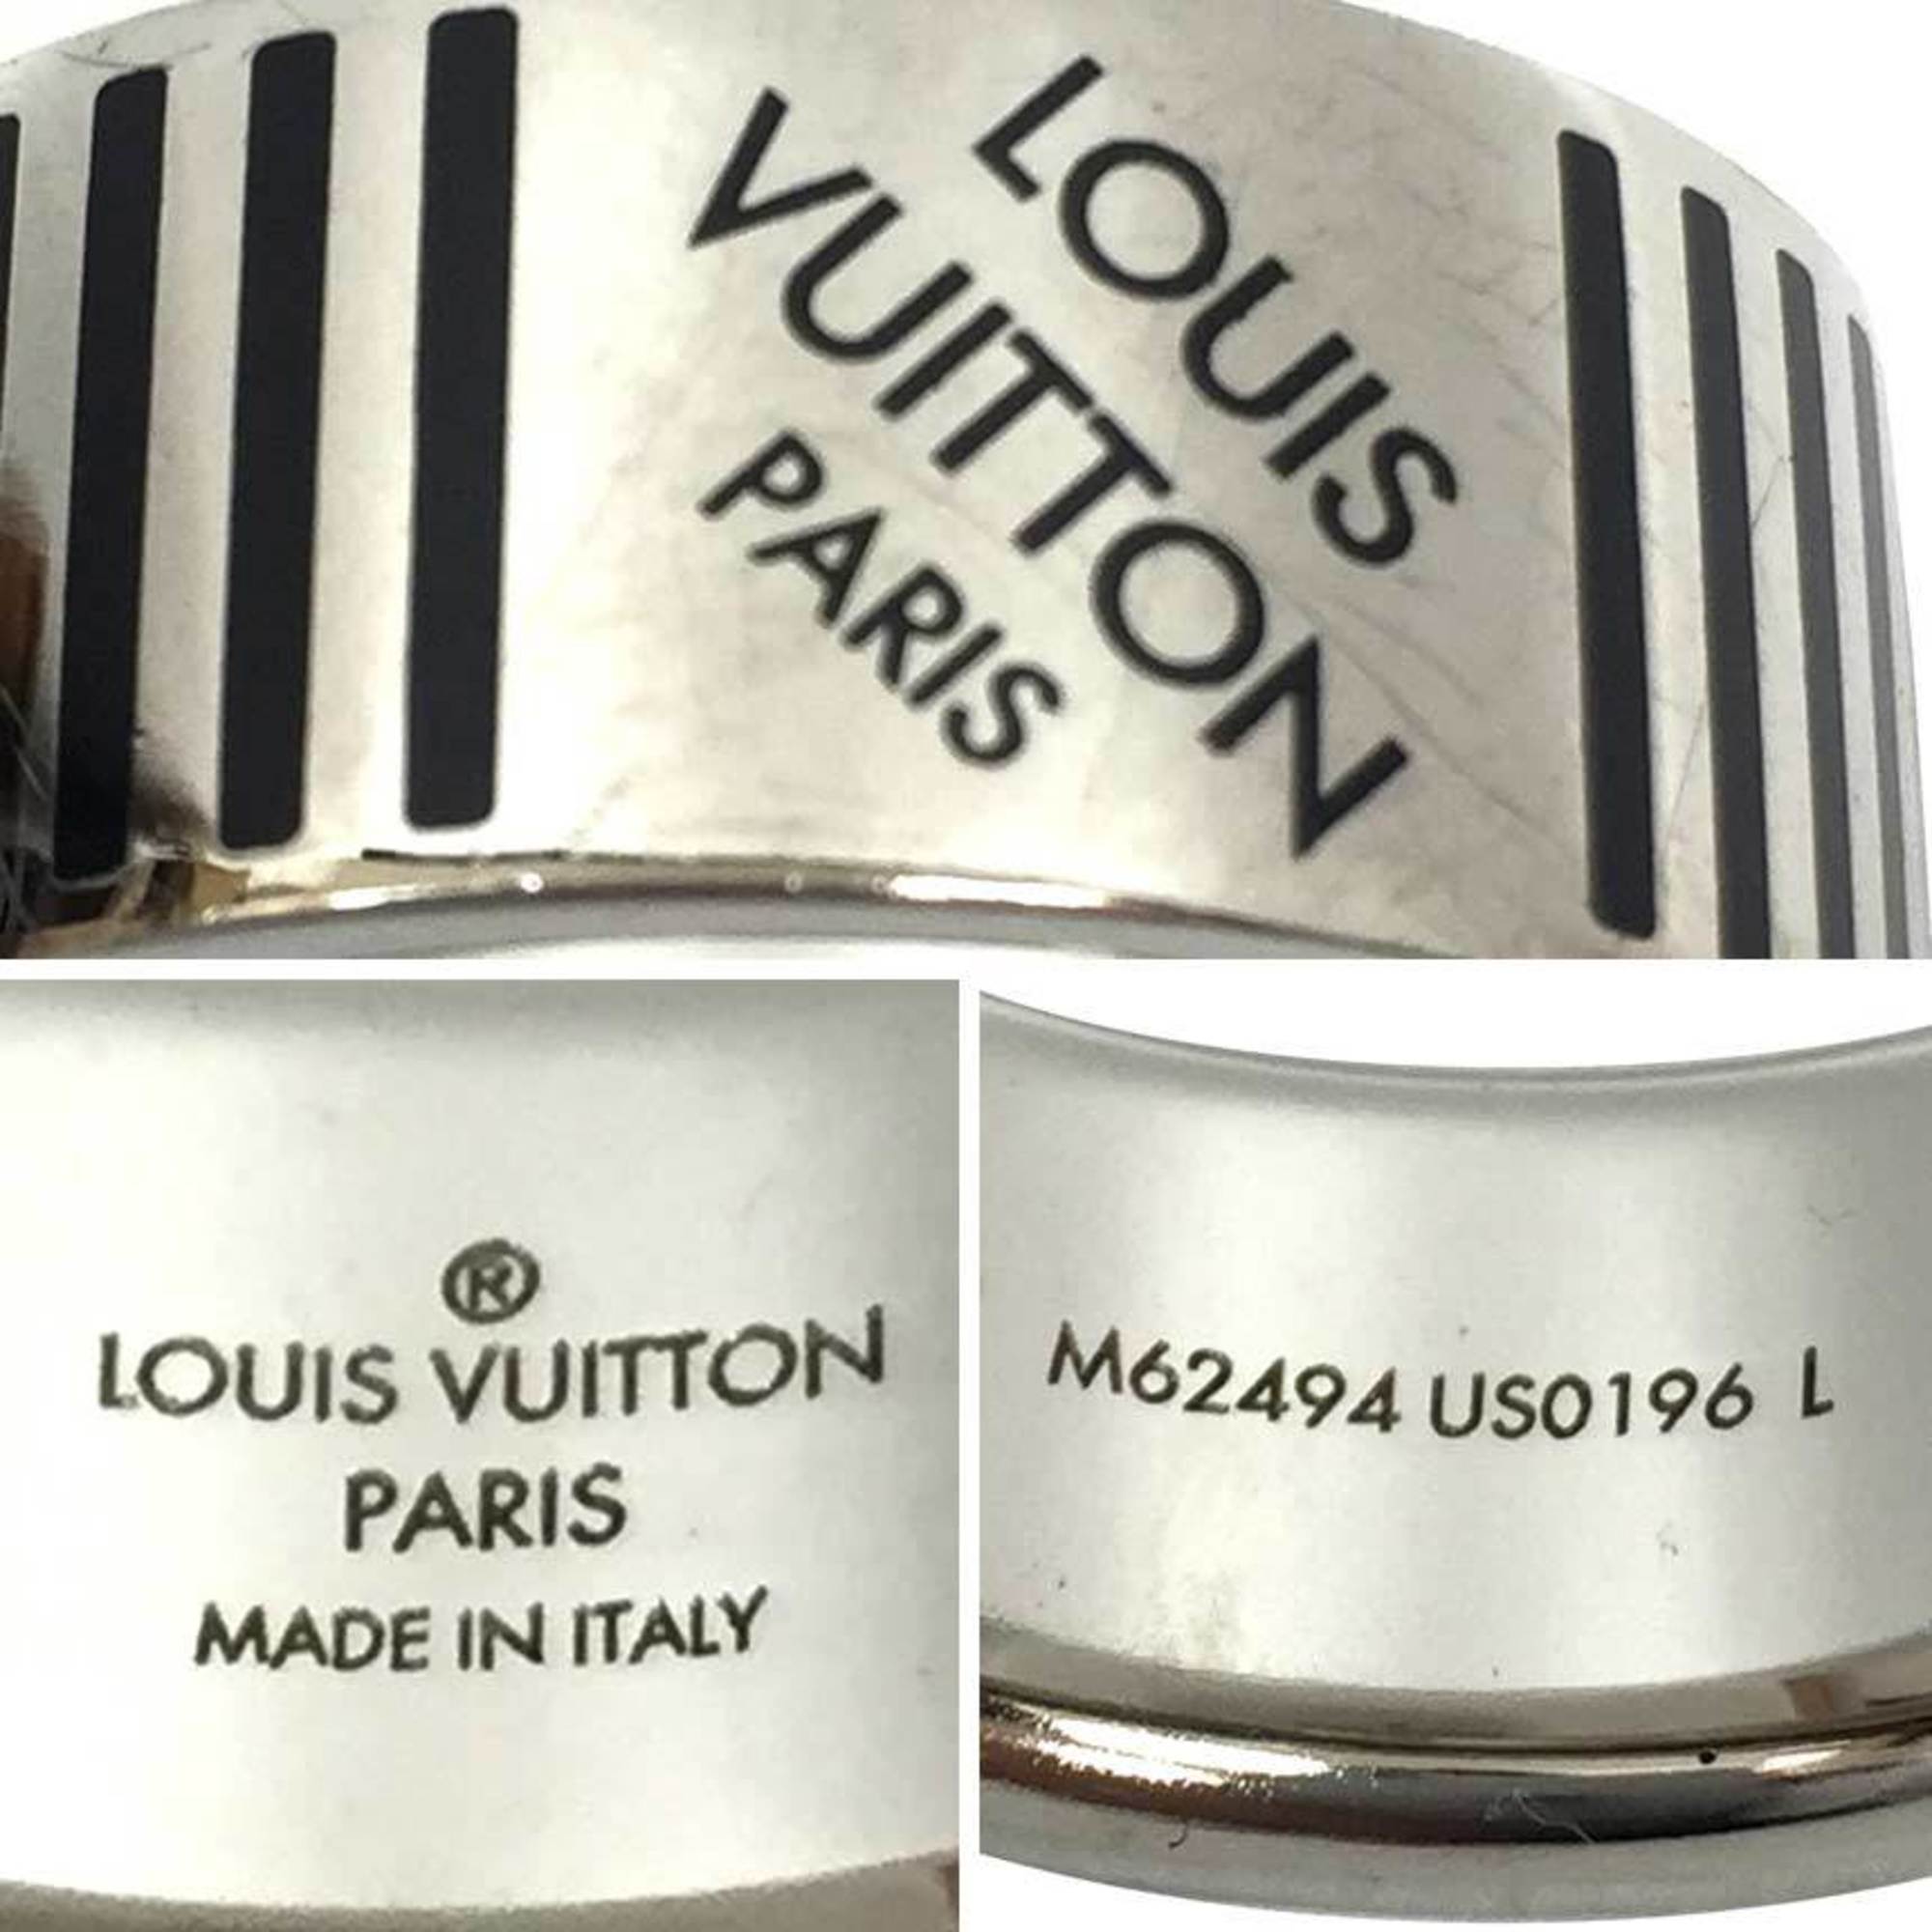 LOUIS VUITTON Berg Damier Colors Ring M62494 L size Silver color Louis Vuitton